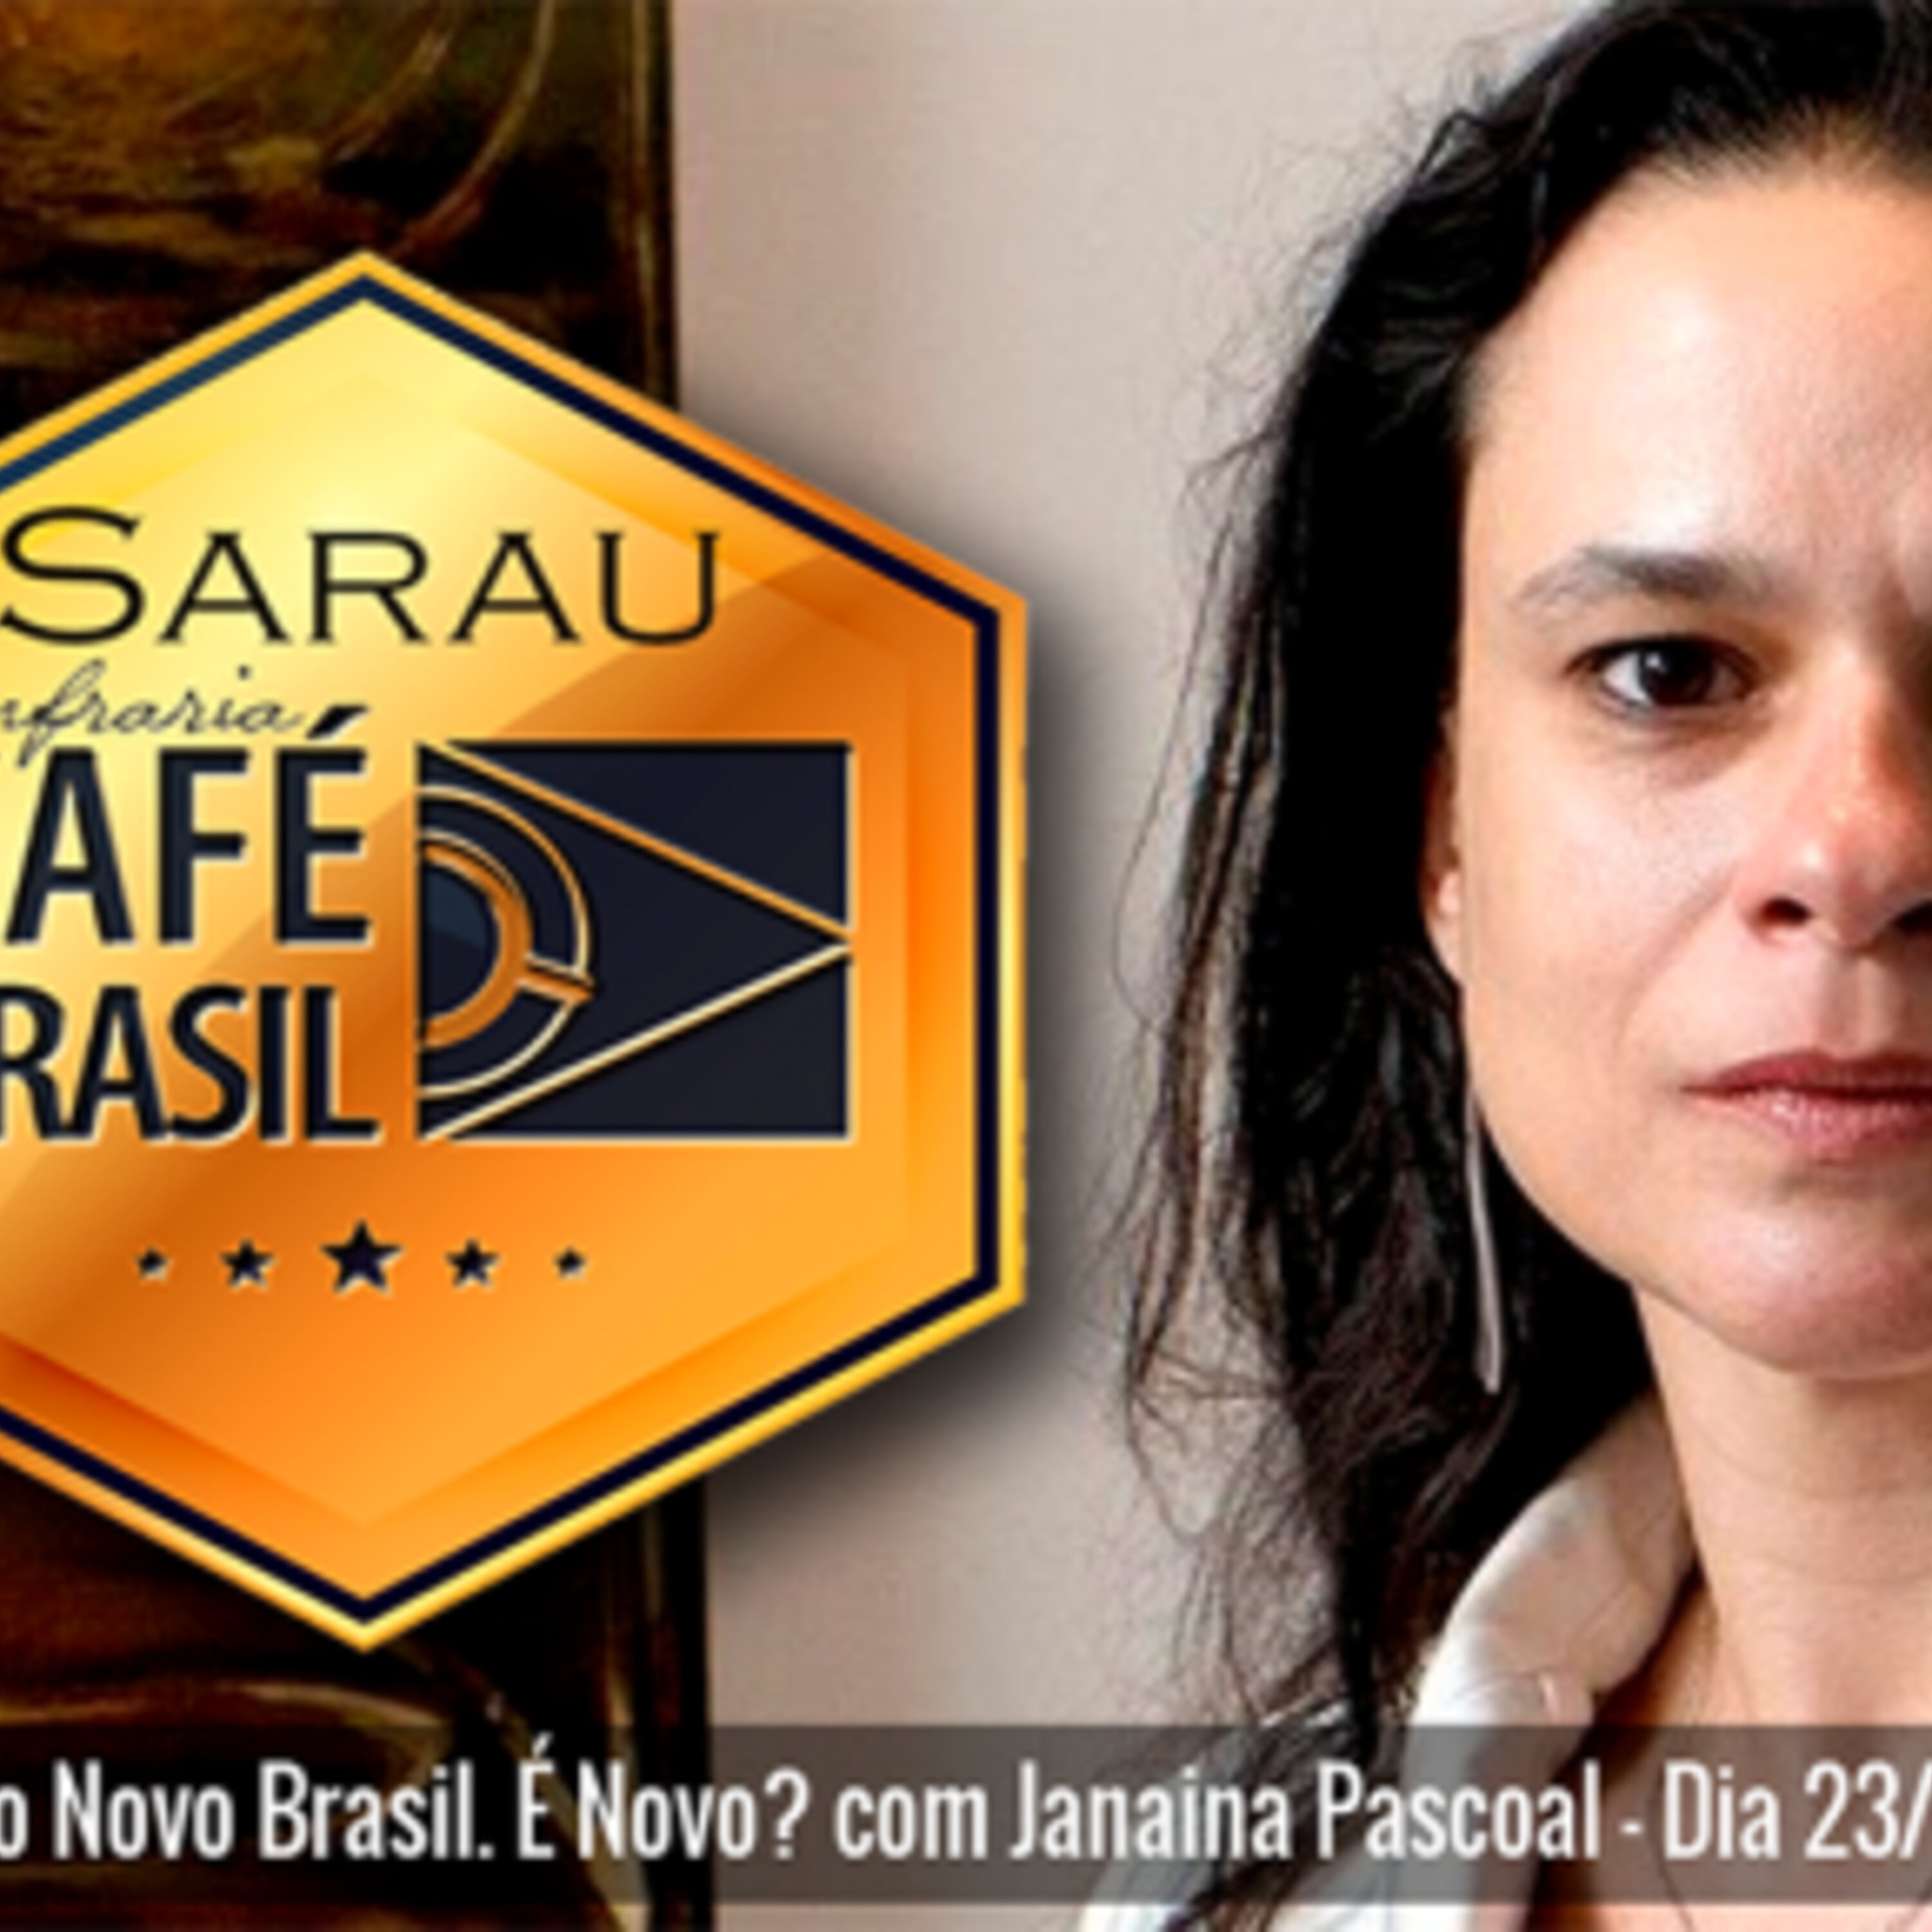 Café Brasil 654 – Sarau Café Brasil III